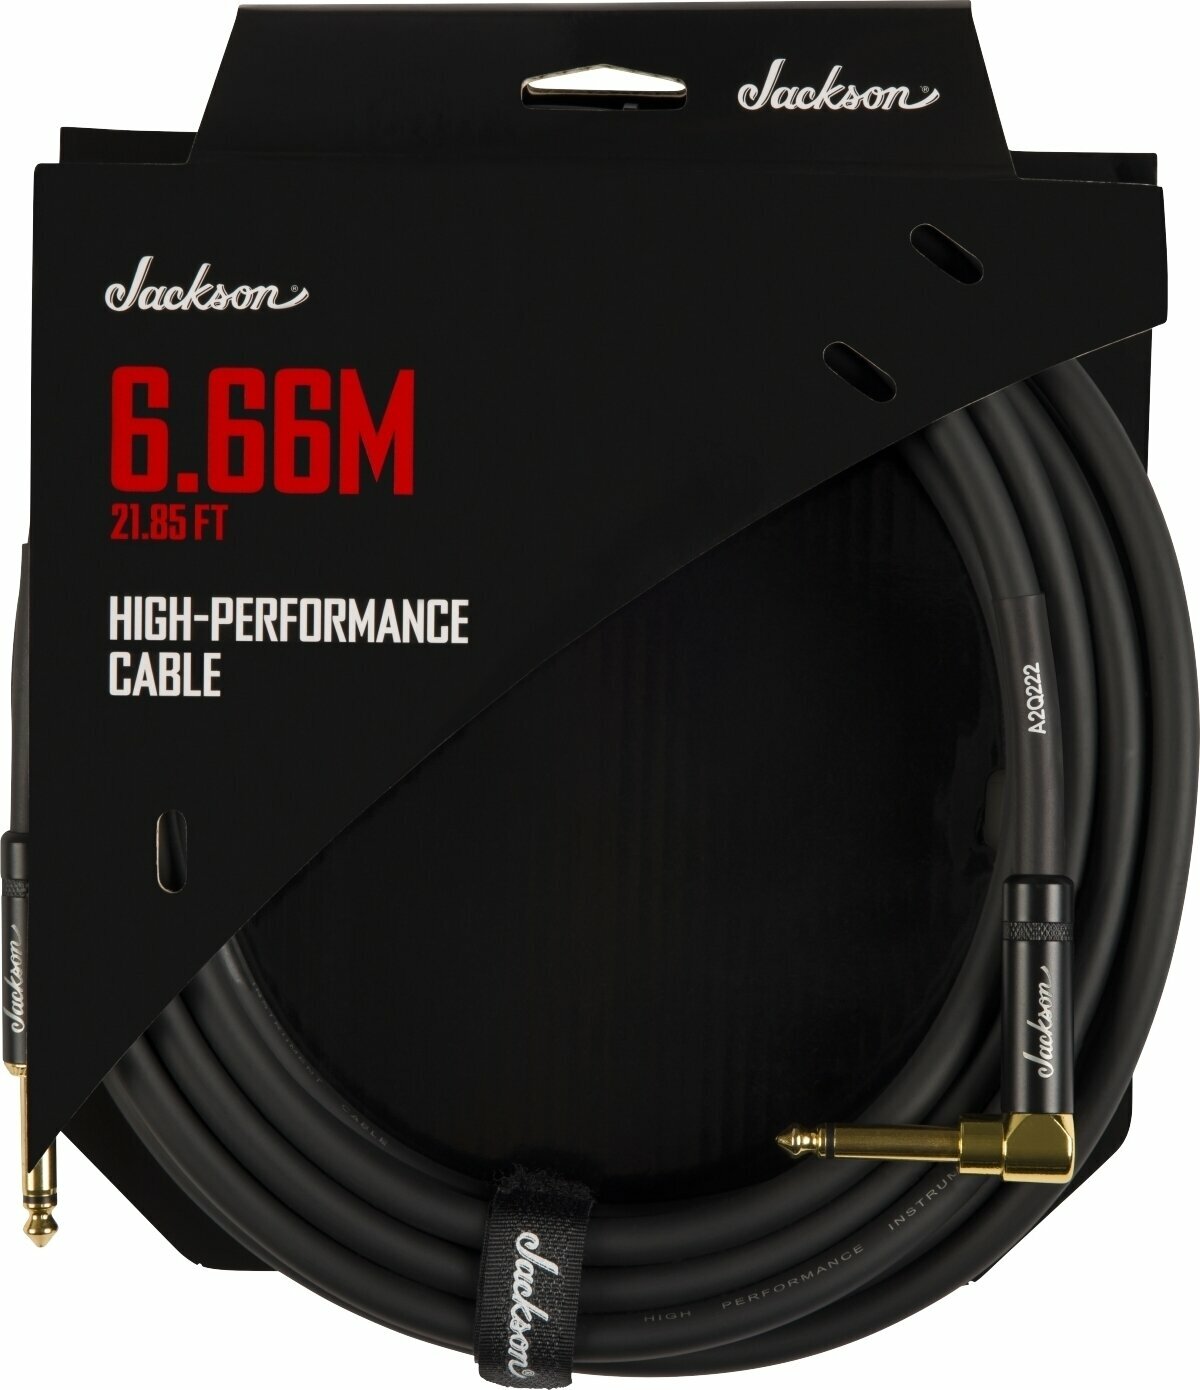 Câble pour instrument Jackson High Performance Cable Noir 6,66 m Droit - Angle